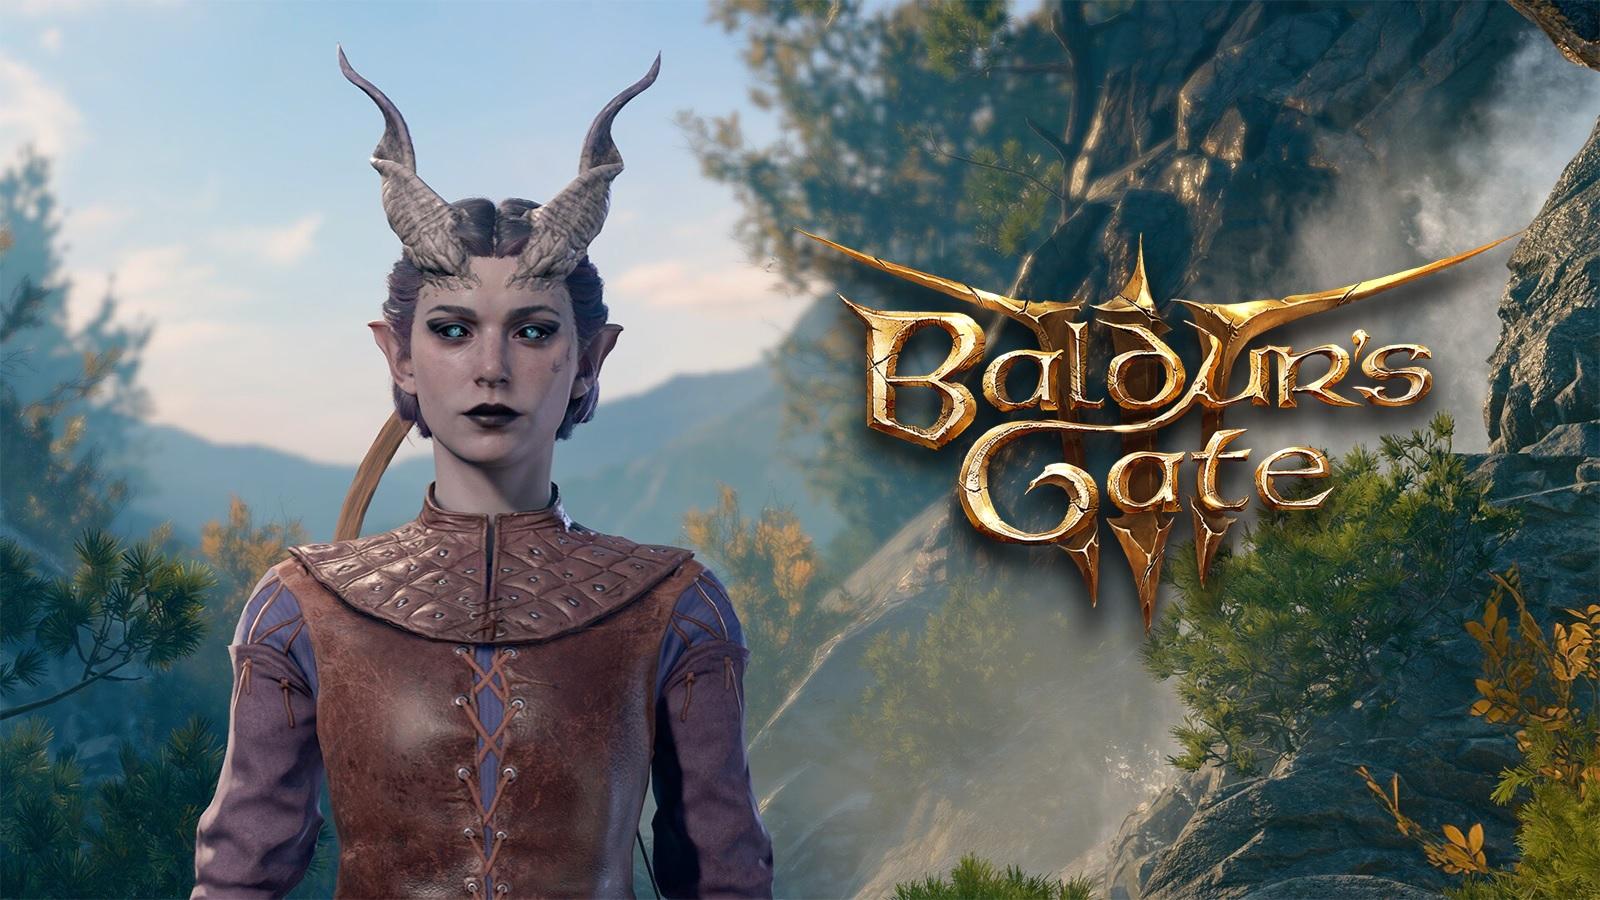 Ecran de création de personnage et logo de Baldur's Gate 3